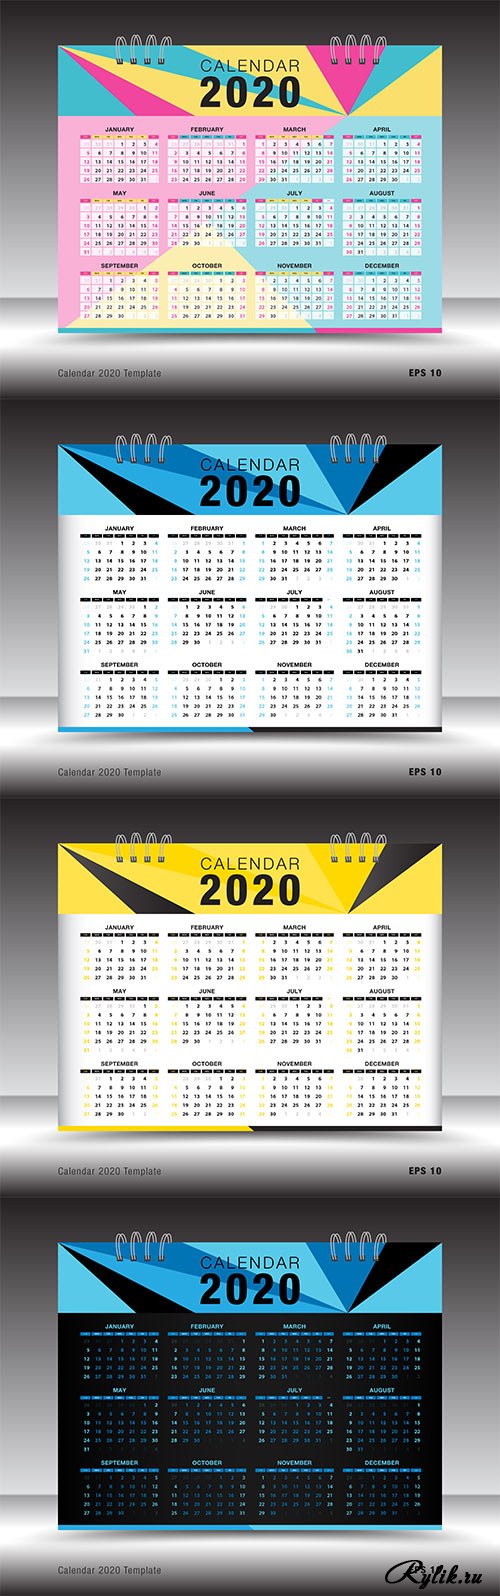 Новый год Календарь 2020 г. многоярусный смайлы